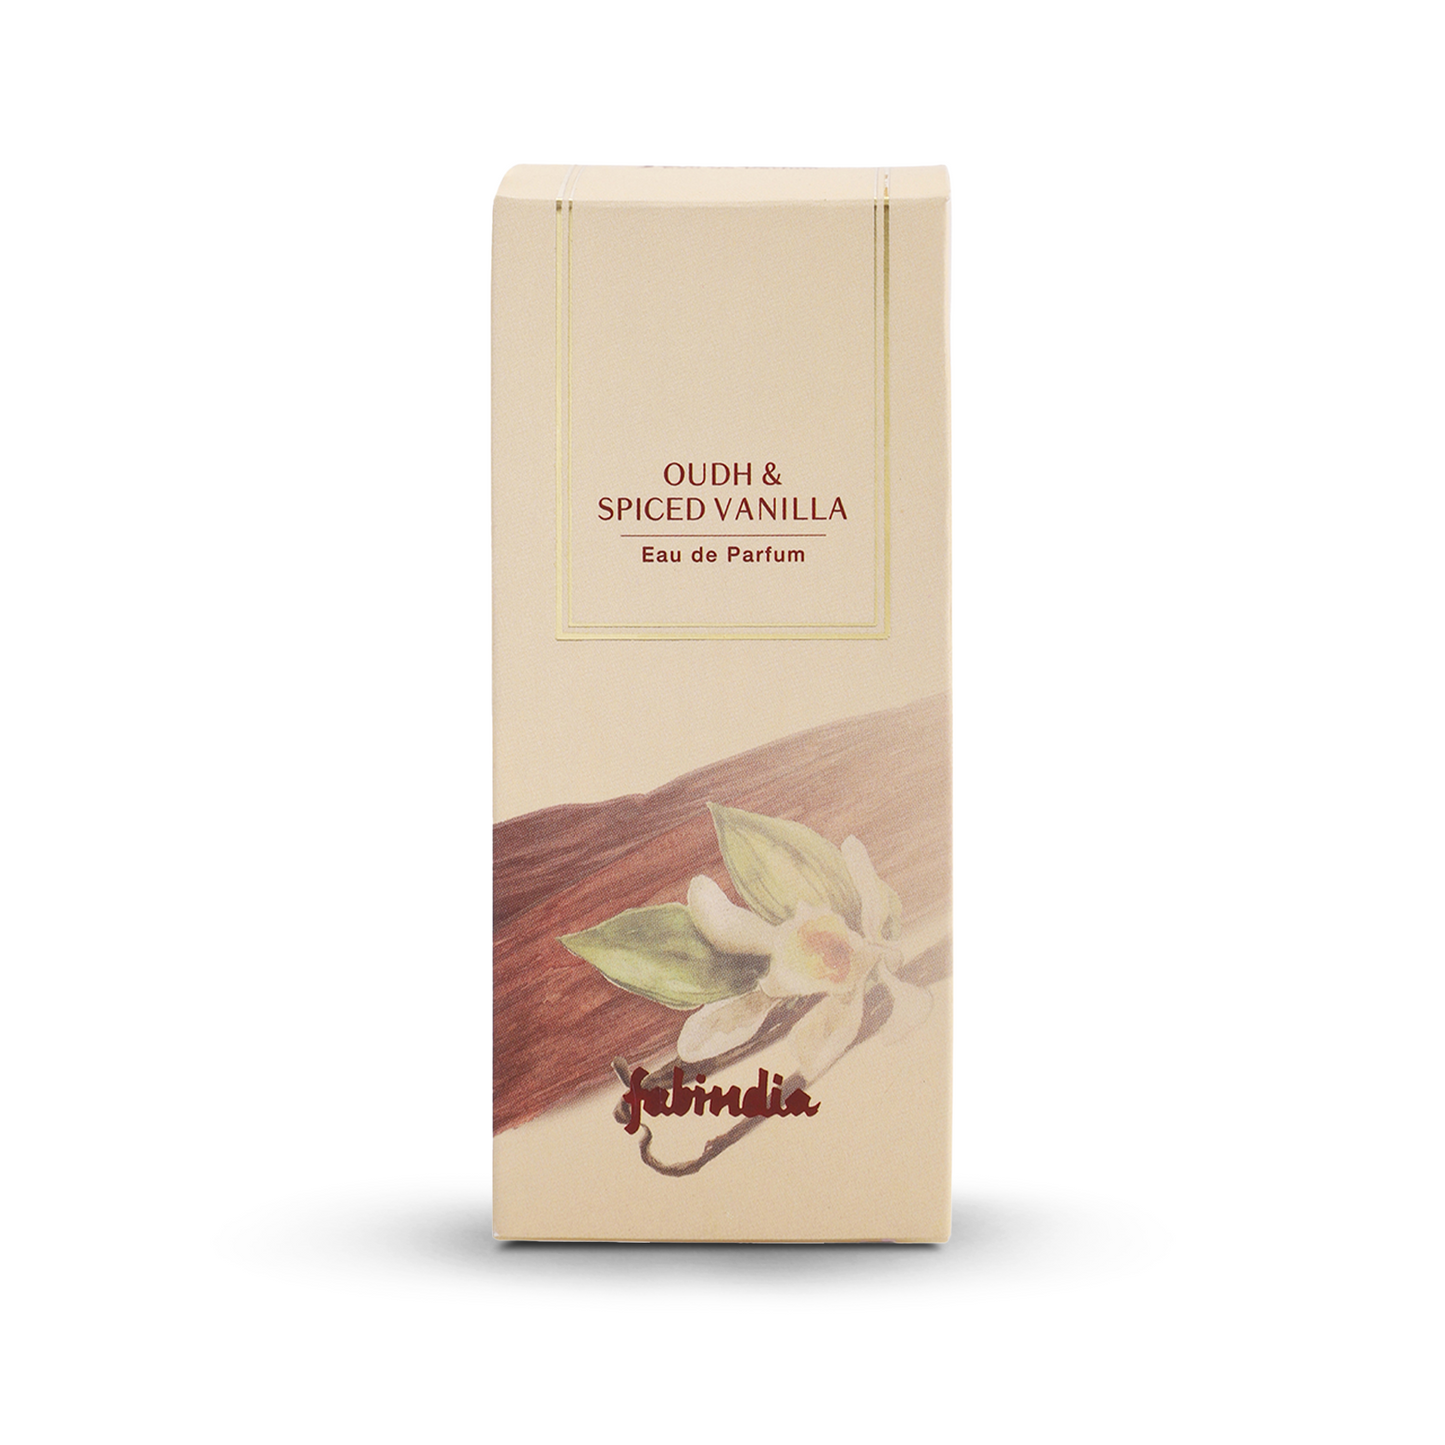 Fabindia Eau de Parfum Oudh & Spiced Vanilla, 100ml